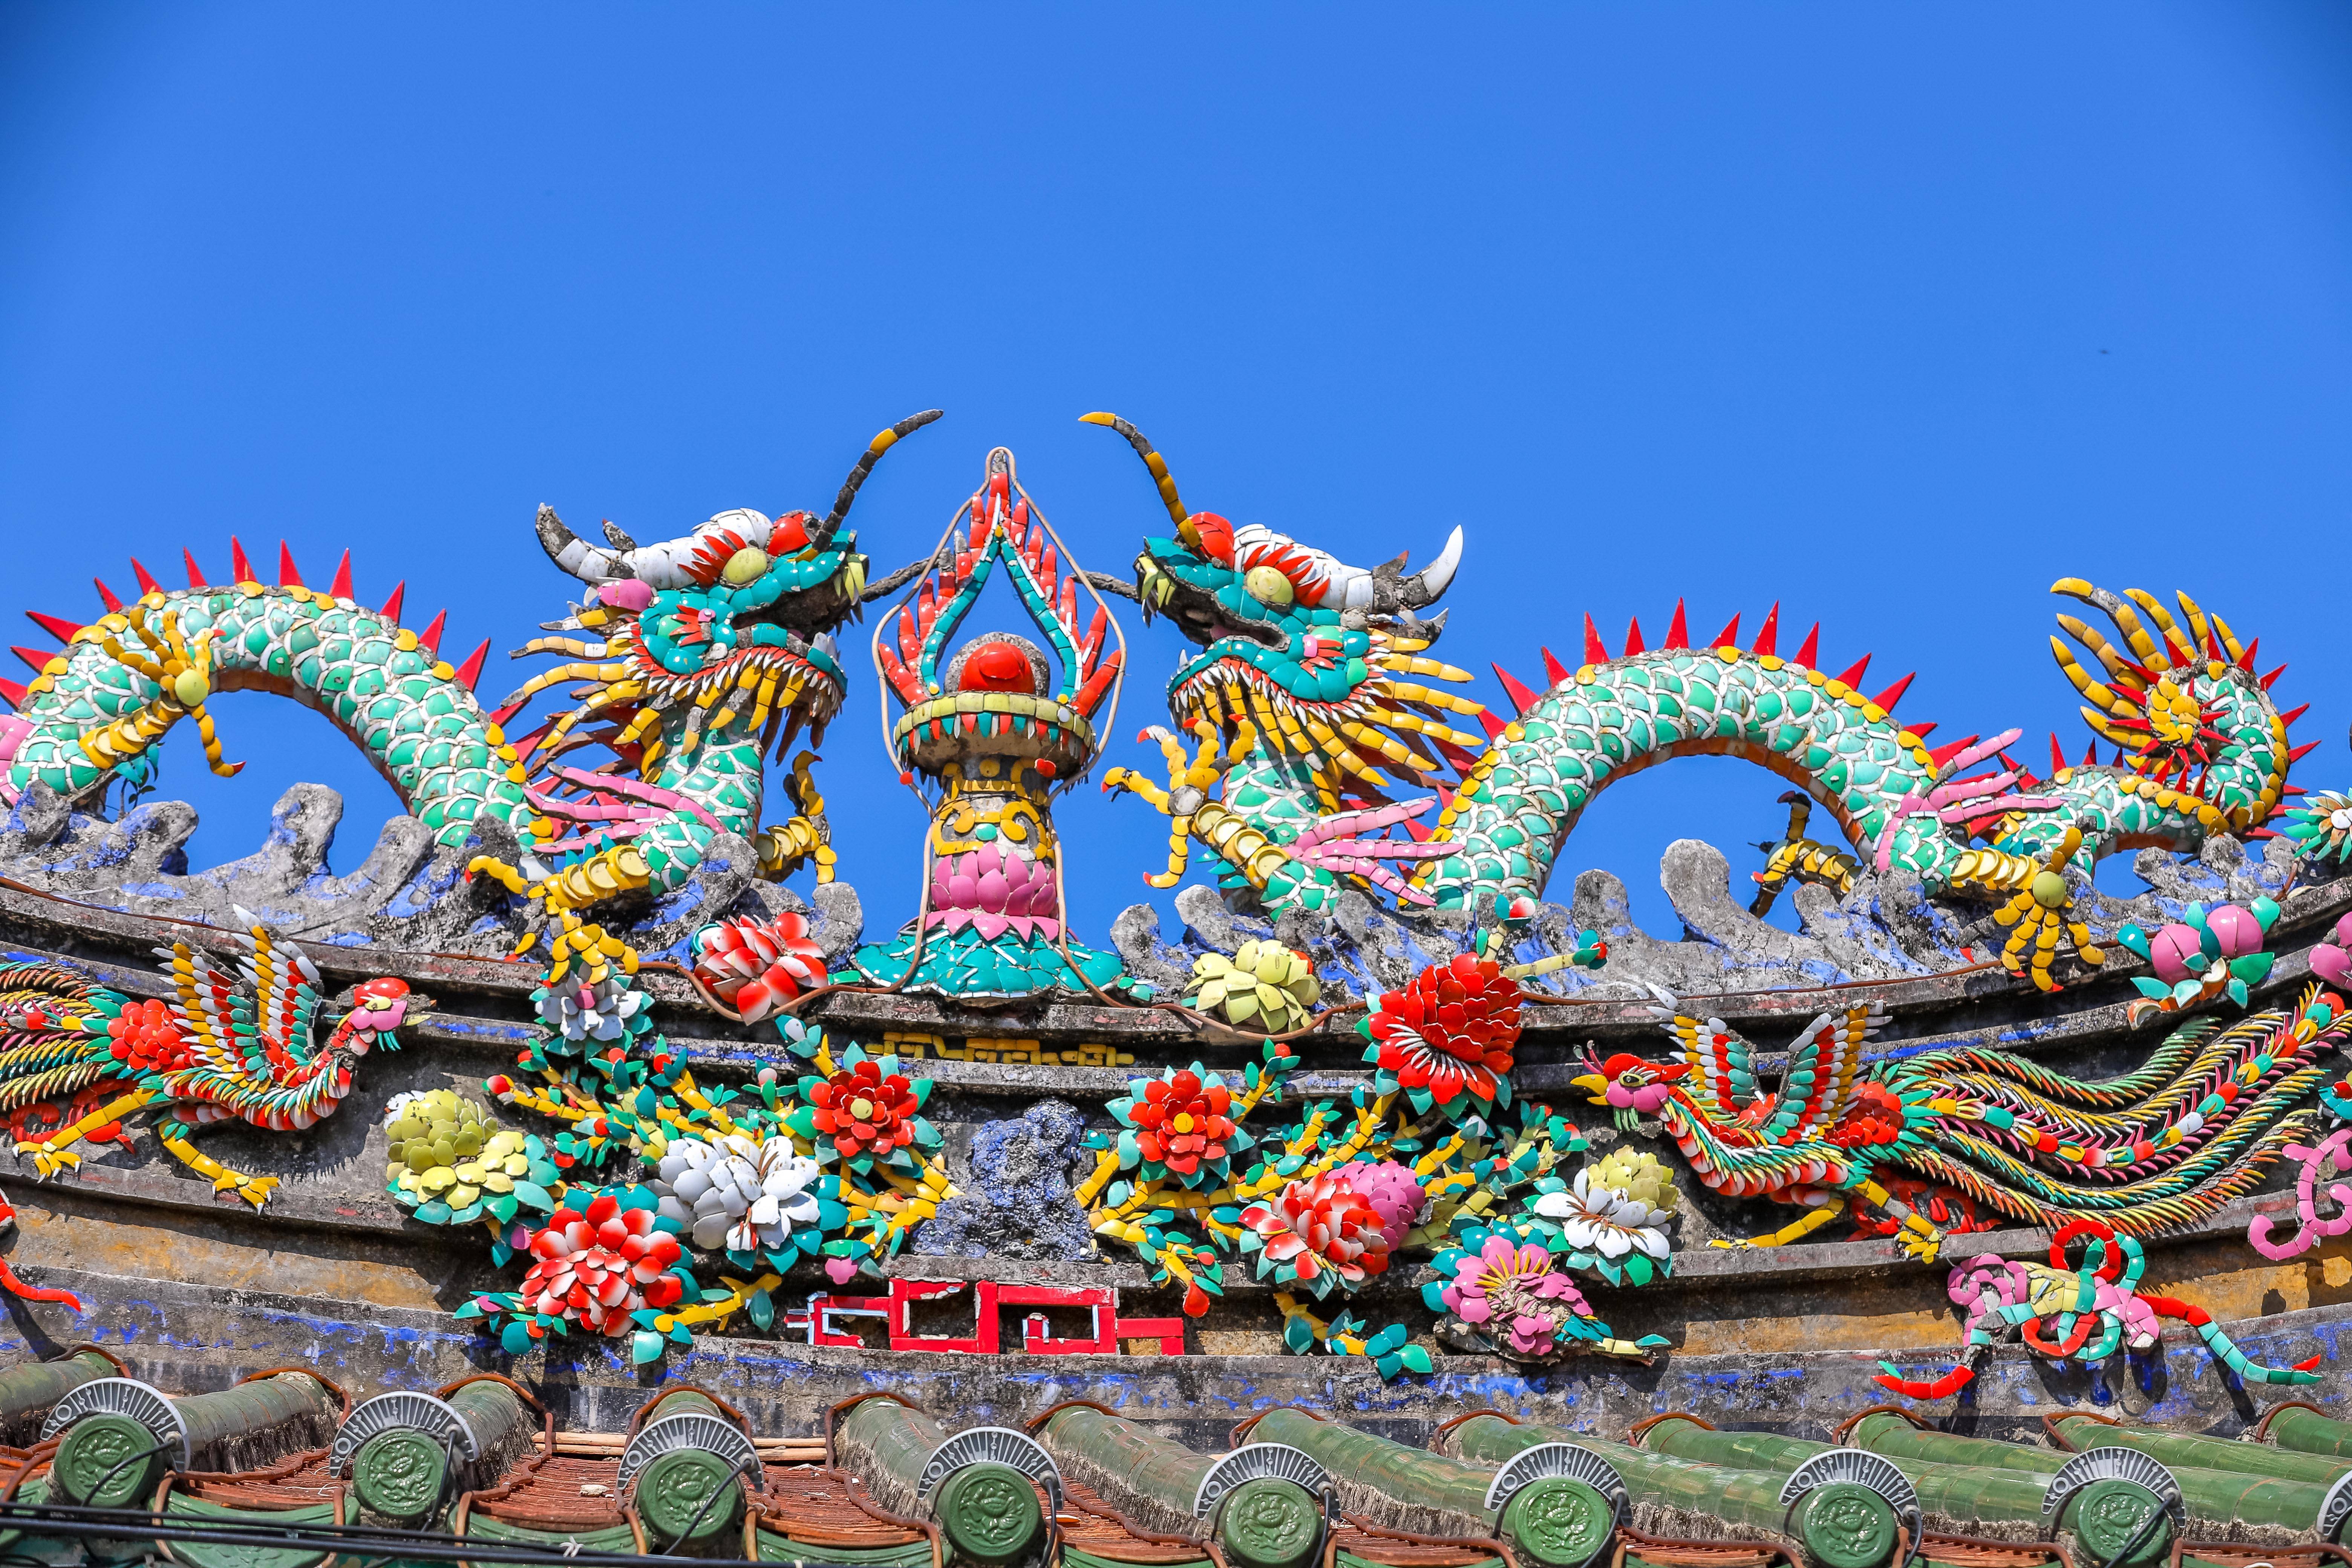 原创广东南澳岛旅游发现每座庙宇屋顶的嵌瓷太精美了